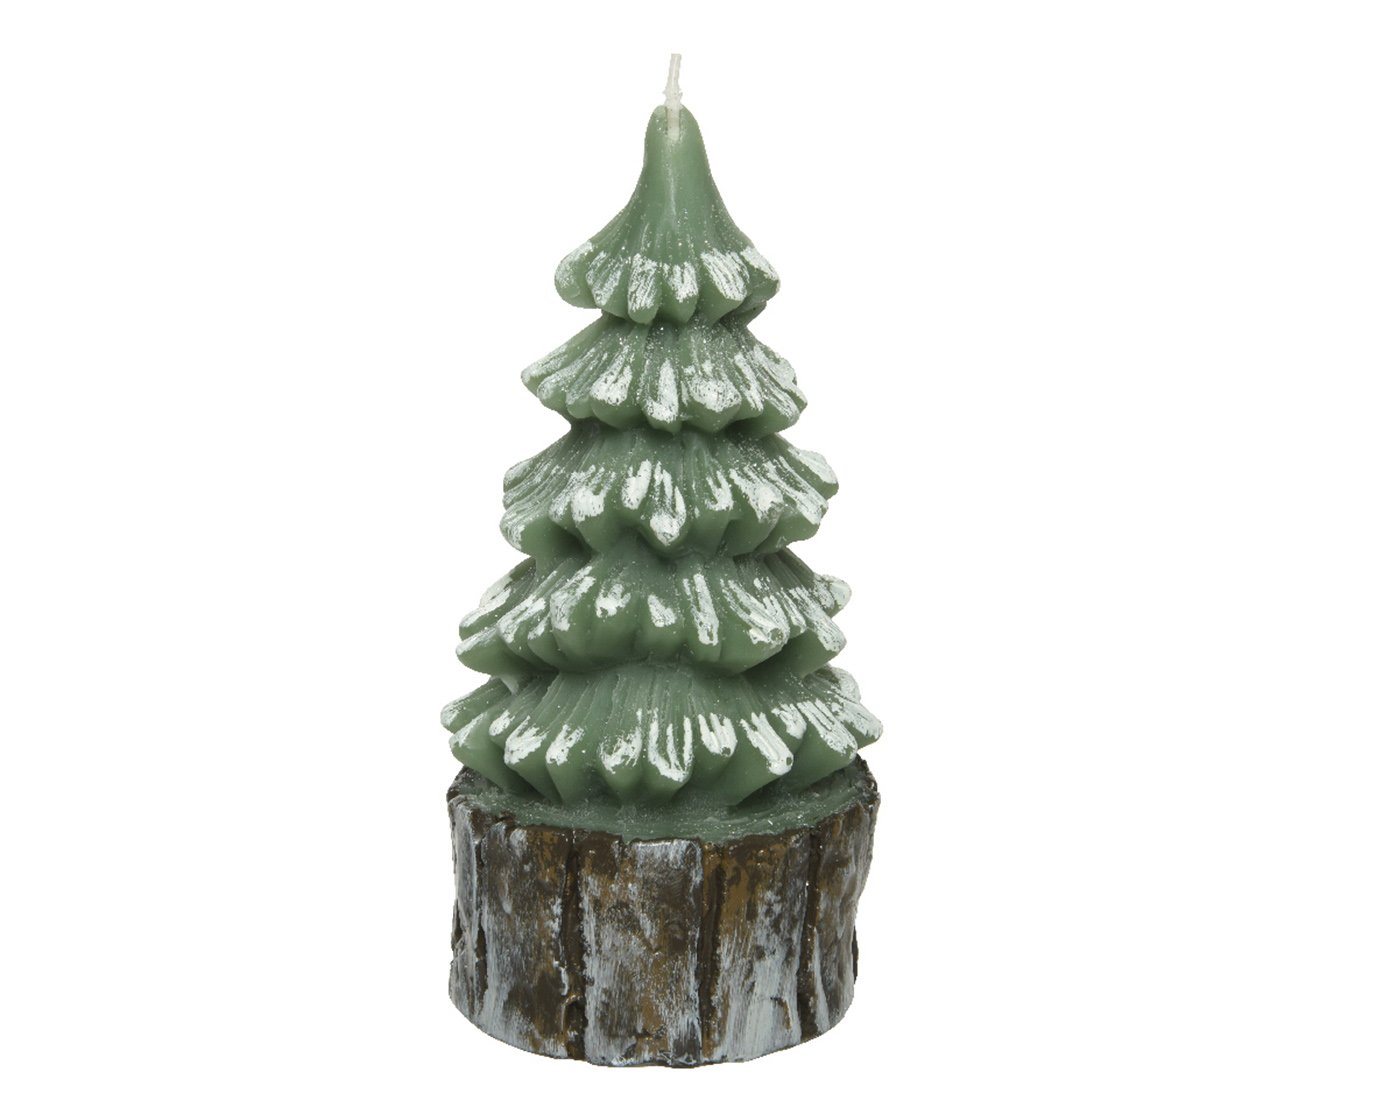 Decoris season decorations Stumpenkerze, Weihnachtskerzen Tannenbaum Wachs 5 x 10cm grün / weiß von Decoris season decorations